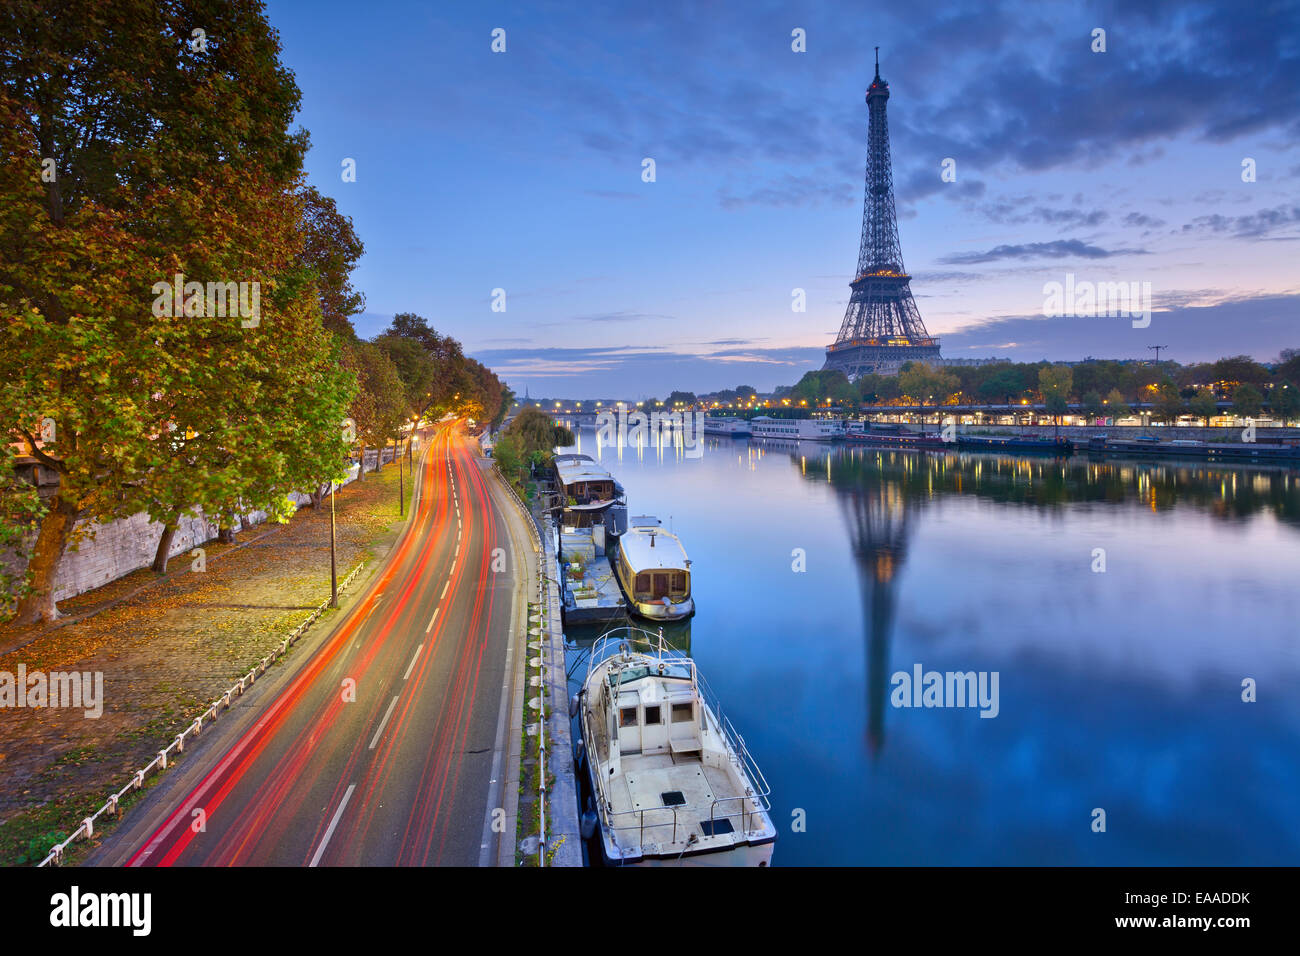 Imagen de la torre Eiffel, con el reflejo en el río Sena. Foto de stock